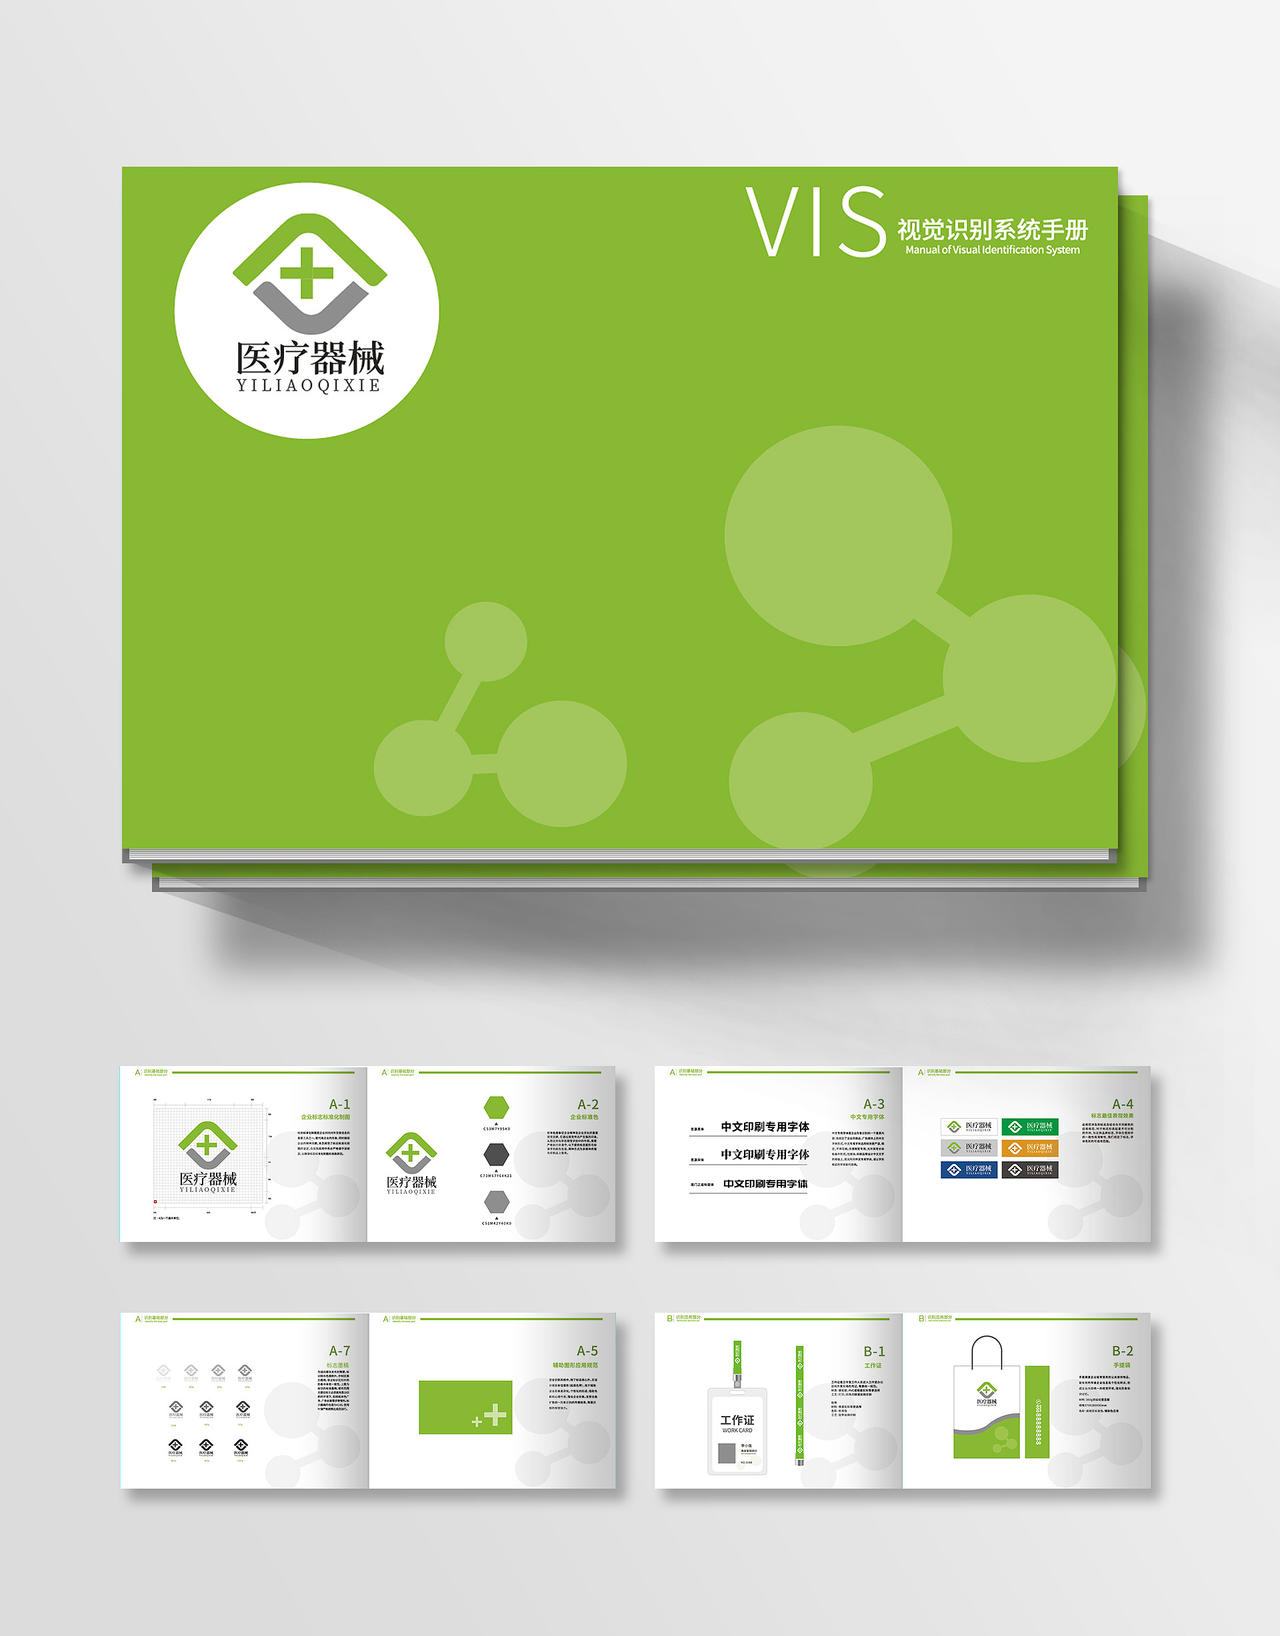 绿色矢量医疗器械VIS视觉识别系统VI手册